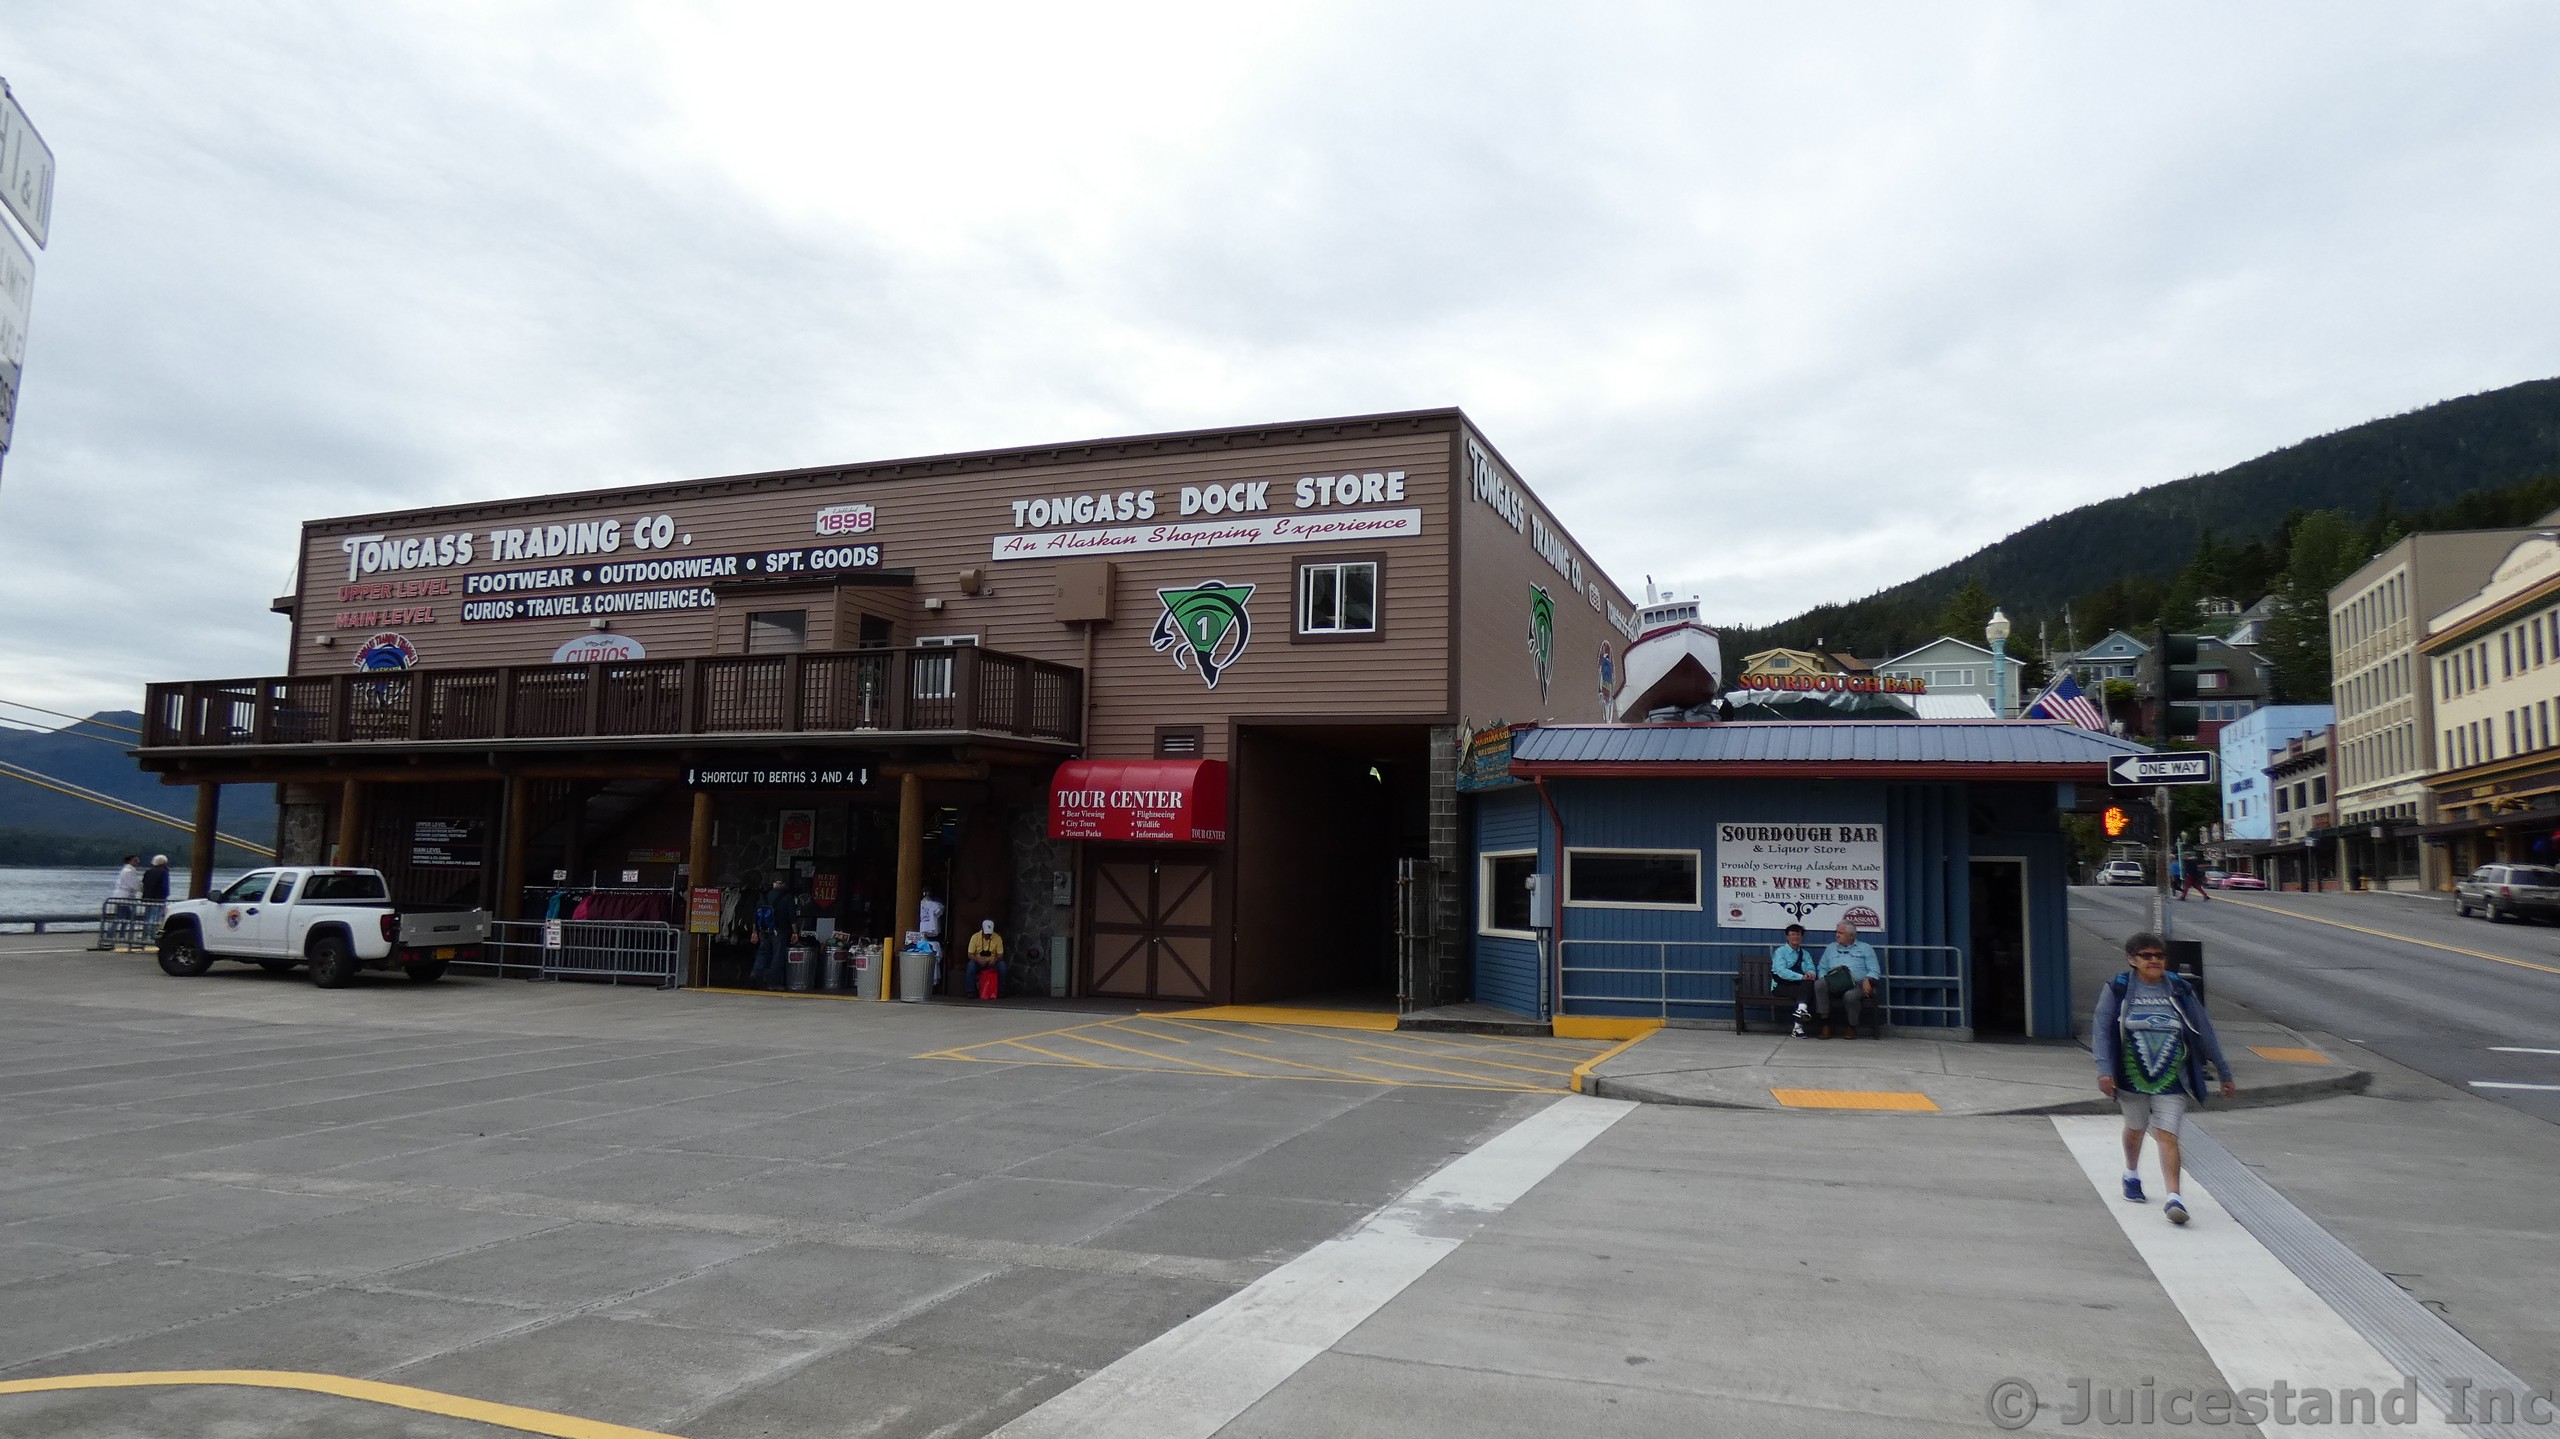 Tongass Dock Store & Sourdough Bar Ketchikan Alaska
